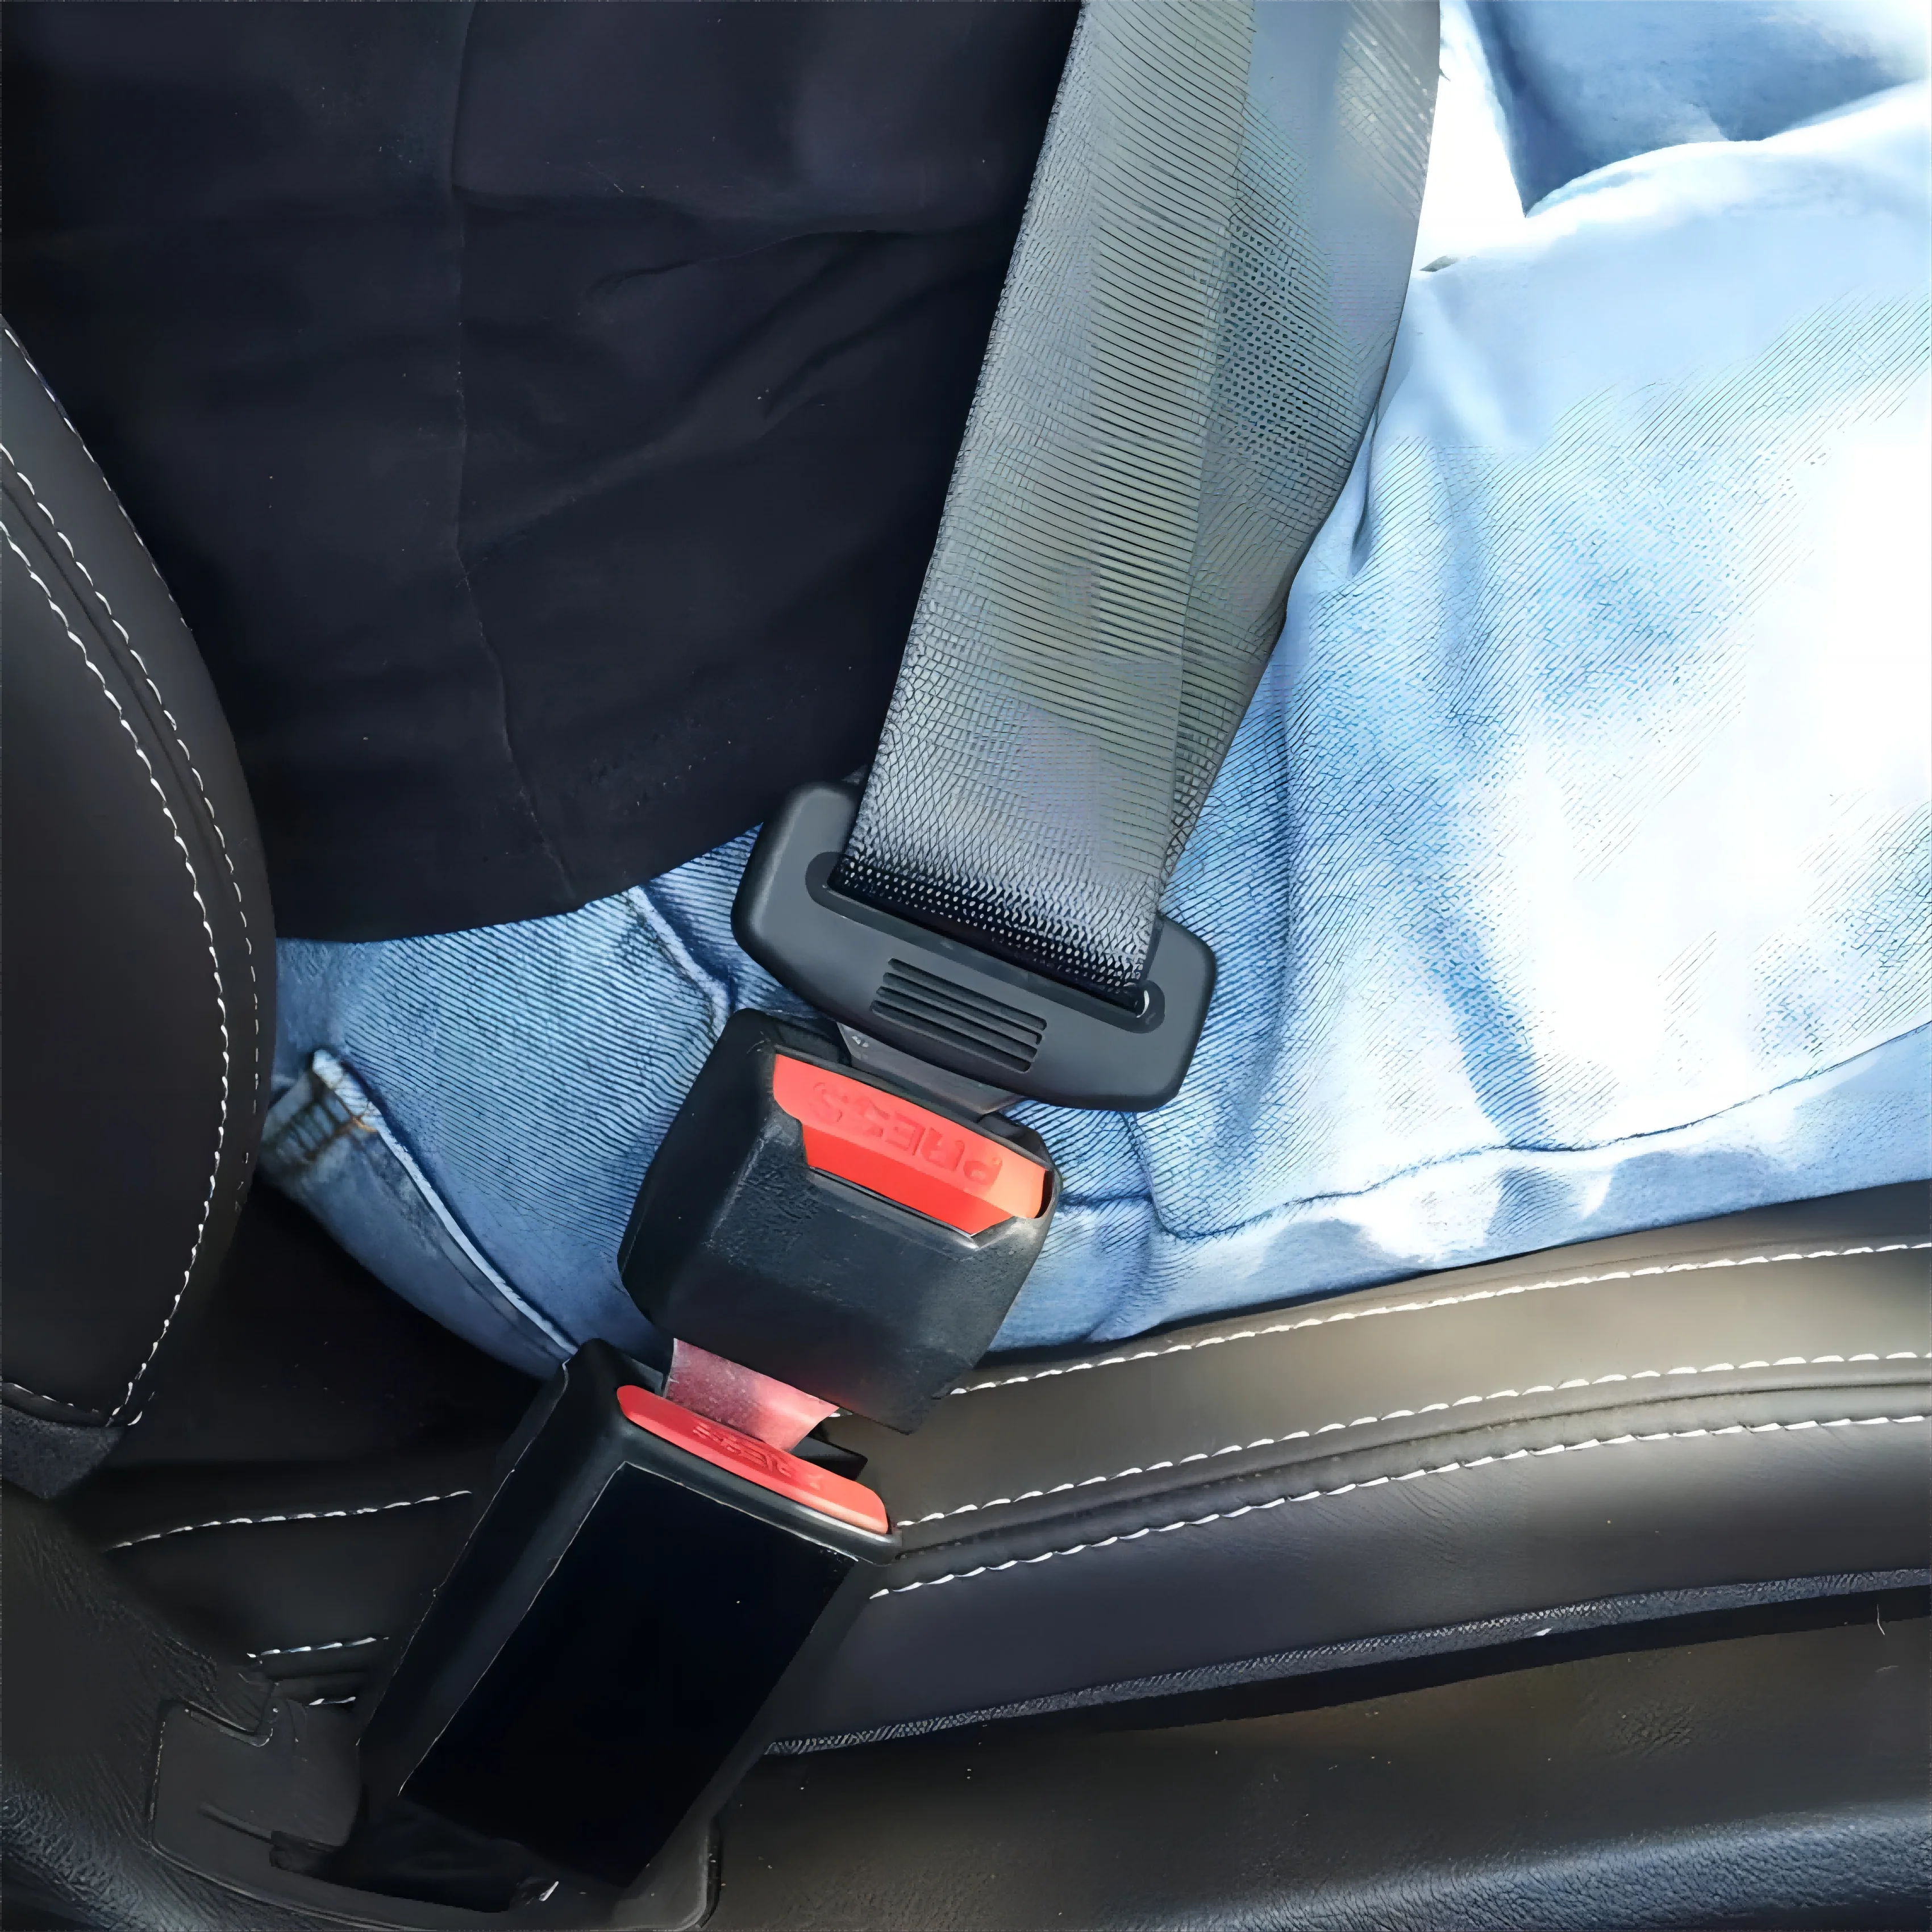 Ремень безопасности для автомобиля. Держатель ремня безопасности. Прищепка для ремня безопасности в автомобиле. Застежка для ремня безопасности в машине.